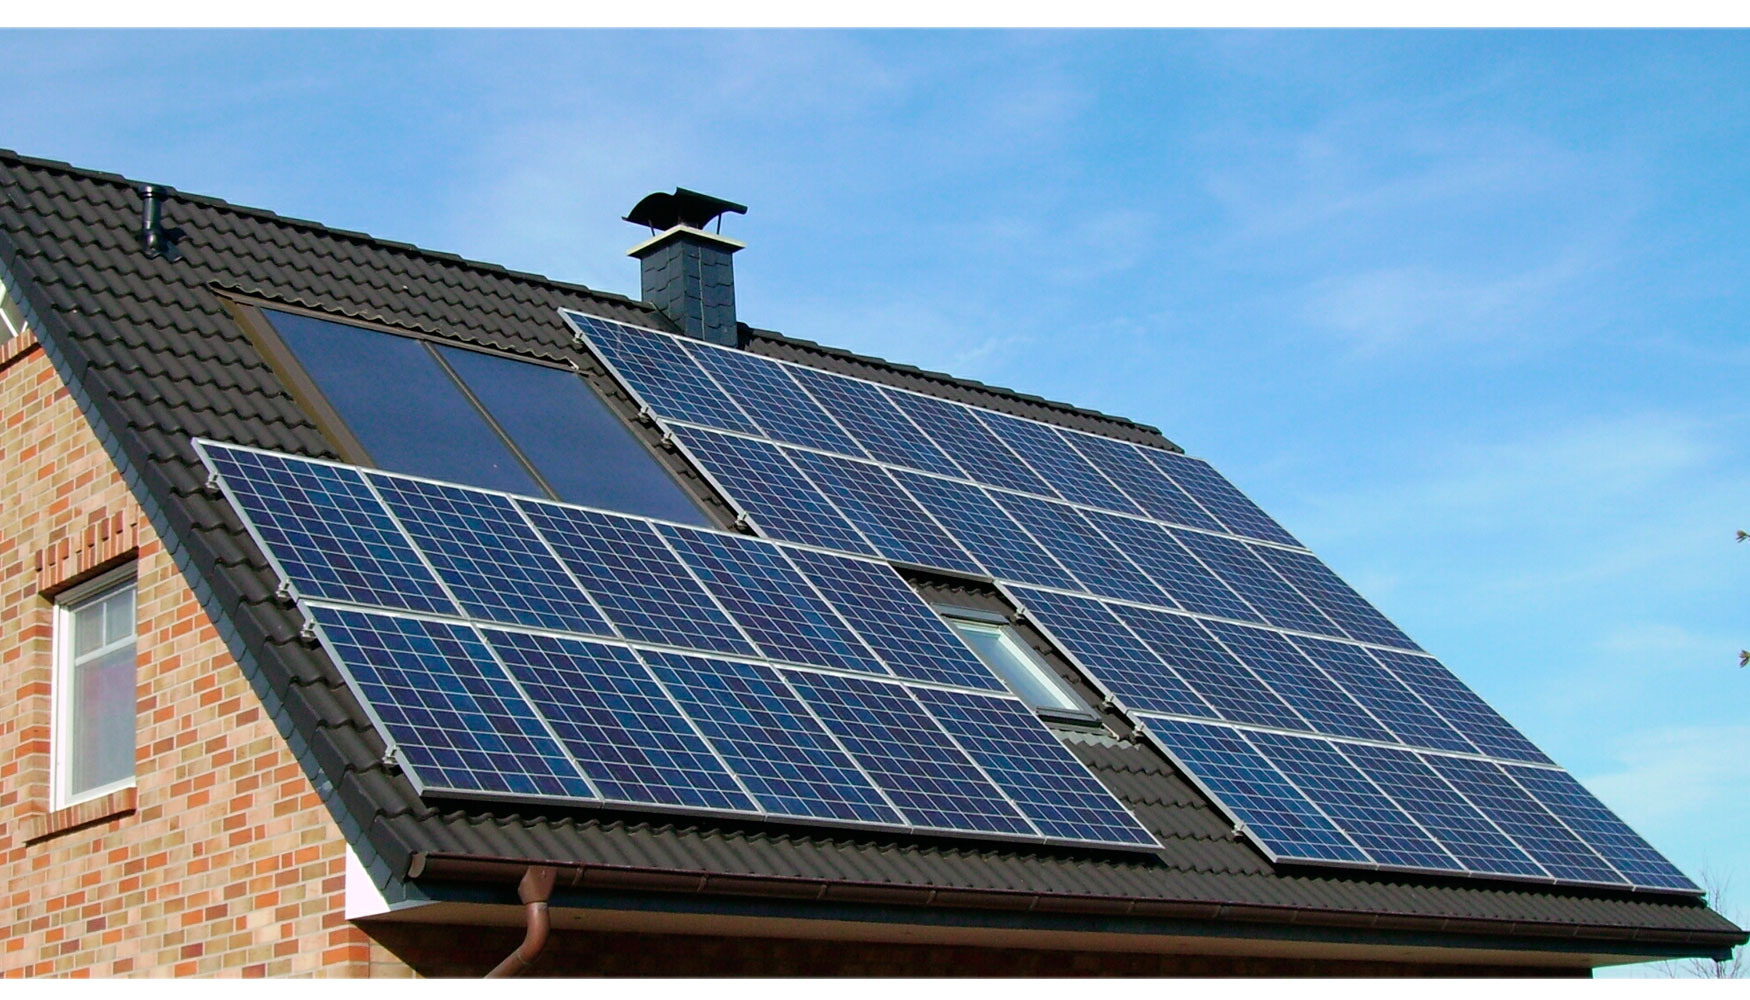 La Comisin de Expertos reconoce el papel central de la fotovoltaica en la transicin energtica